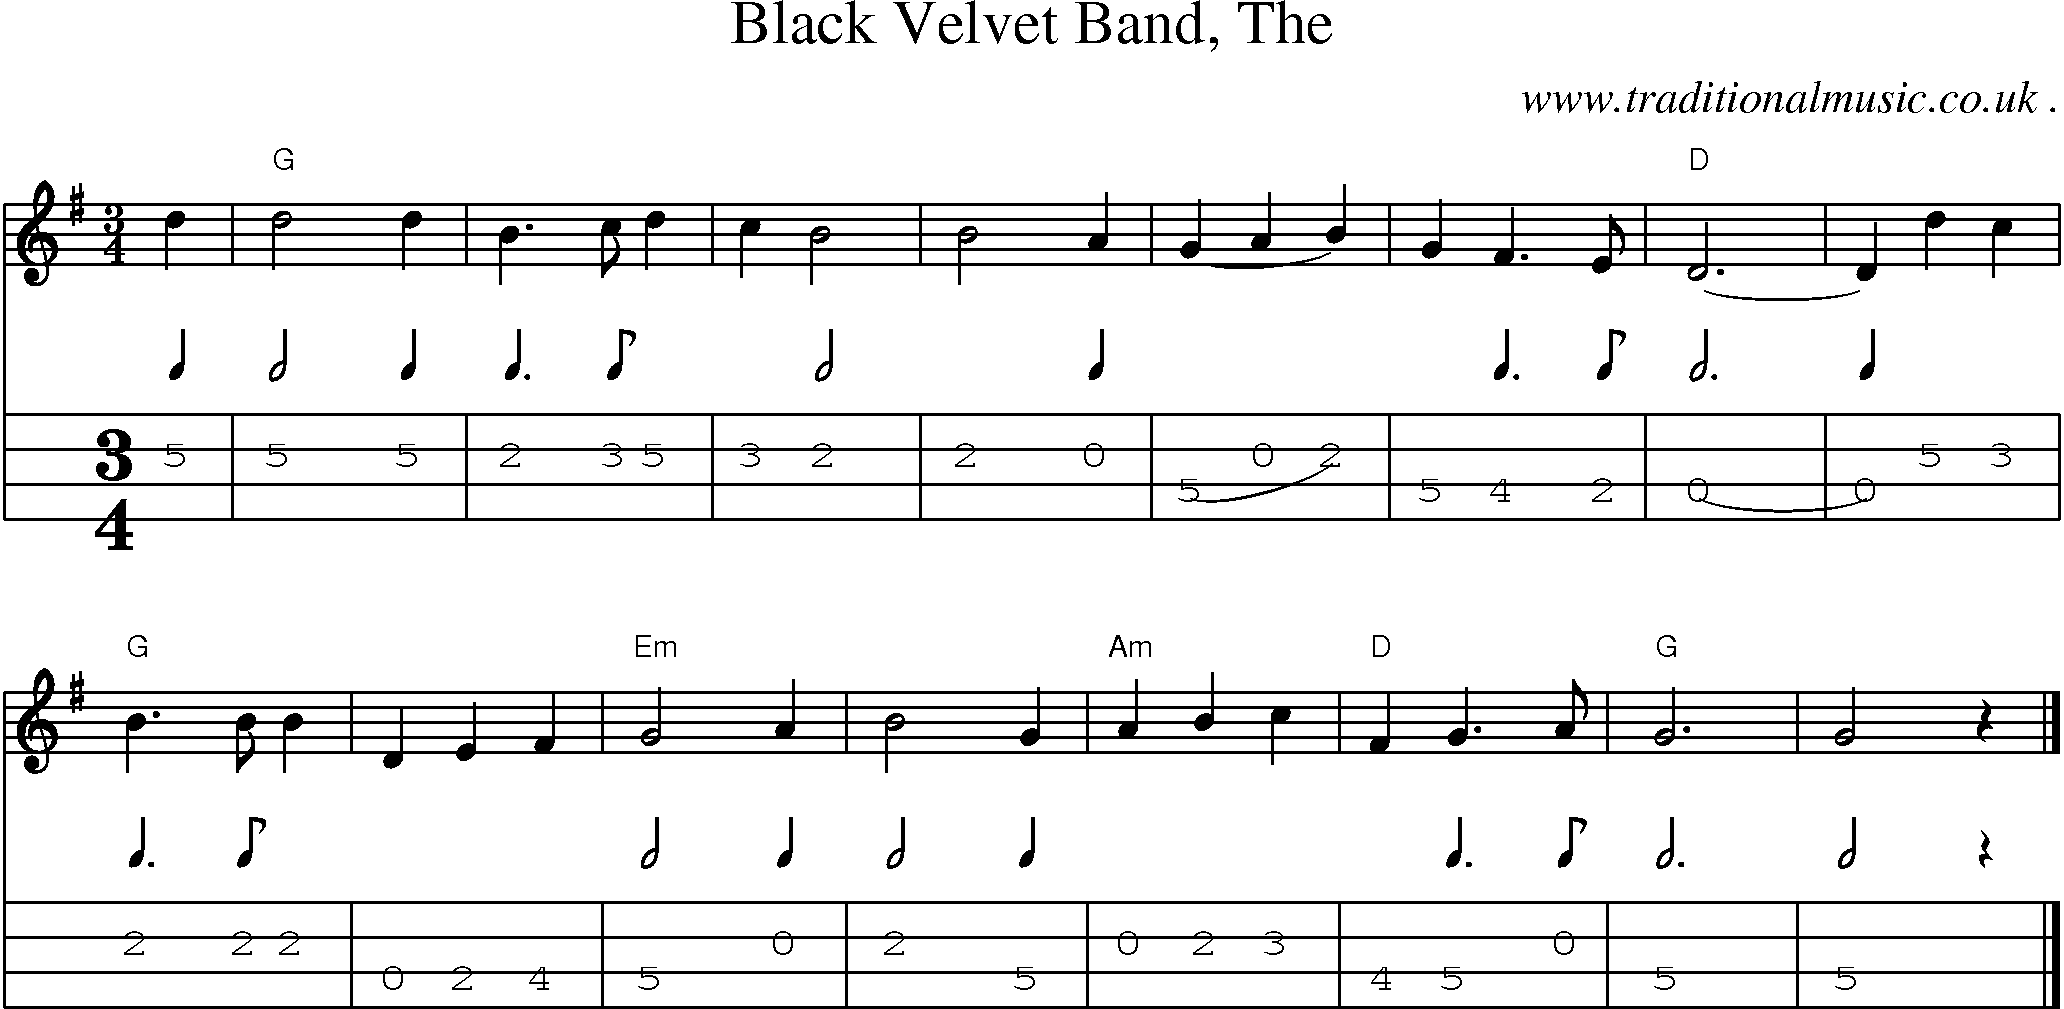 Music Score and Guitar Tabs for Black Velvet Band The